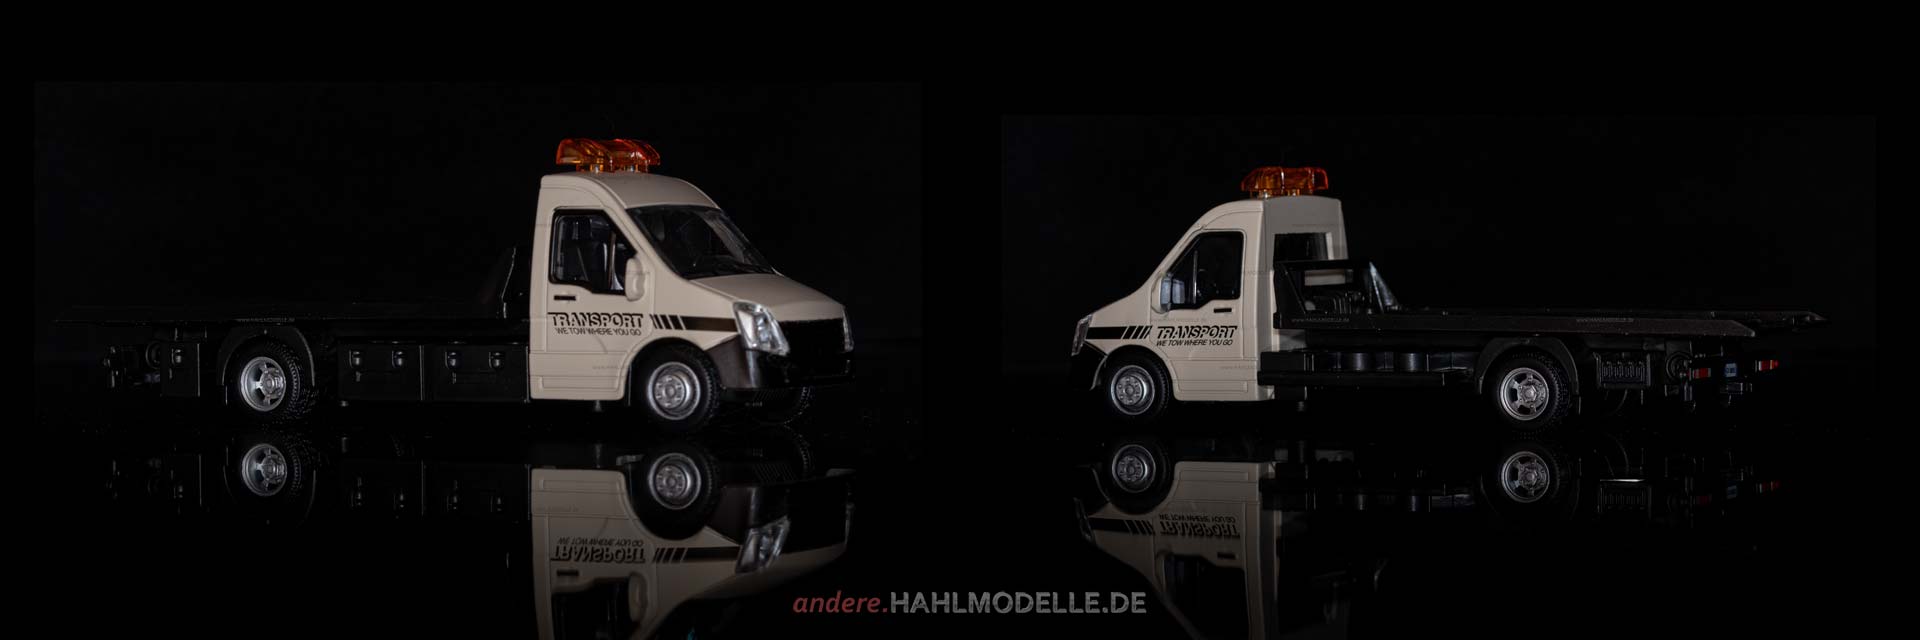 Iveco Daily V | Autotransporter | Bburago | 1:43 | www.andere.hahlmodelle.de